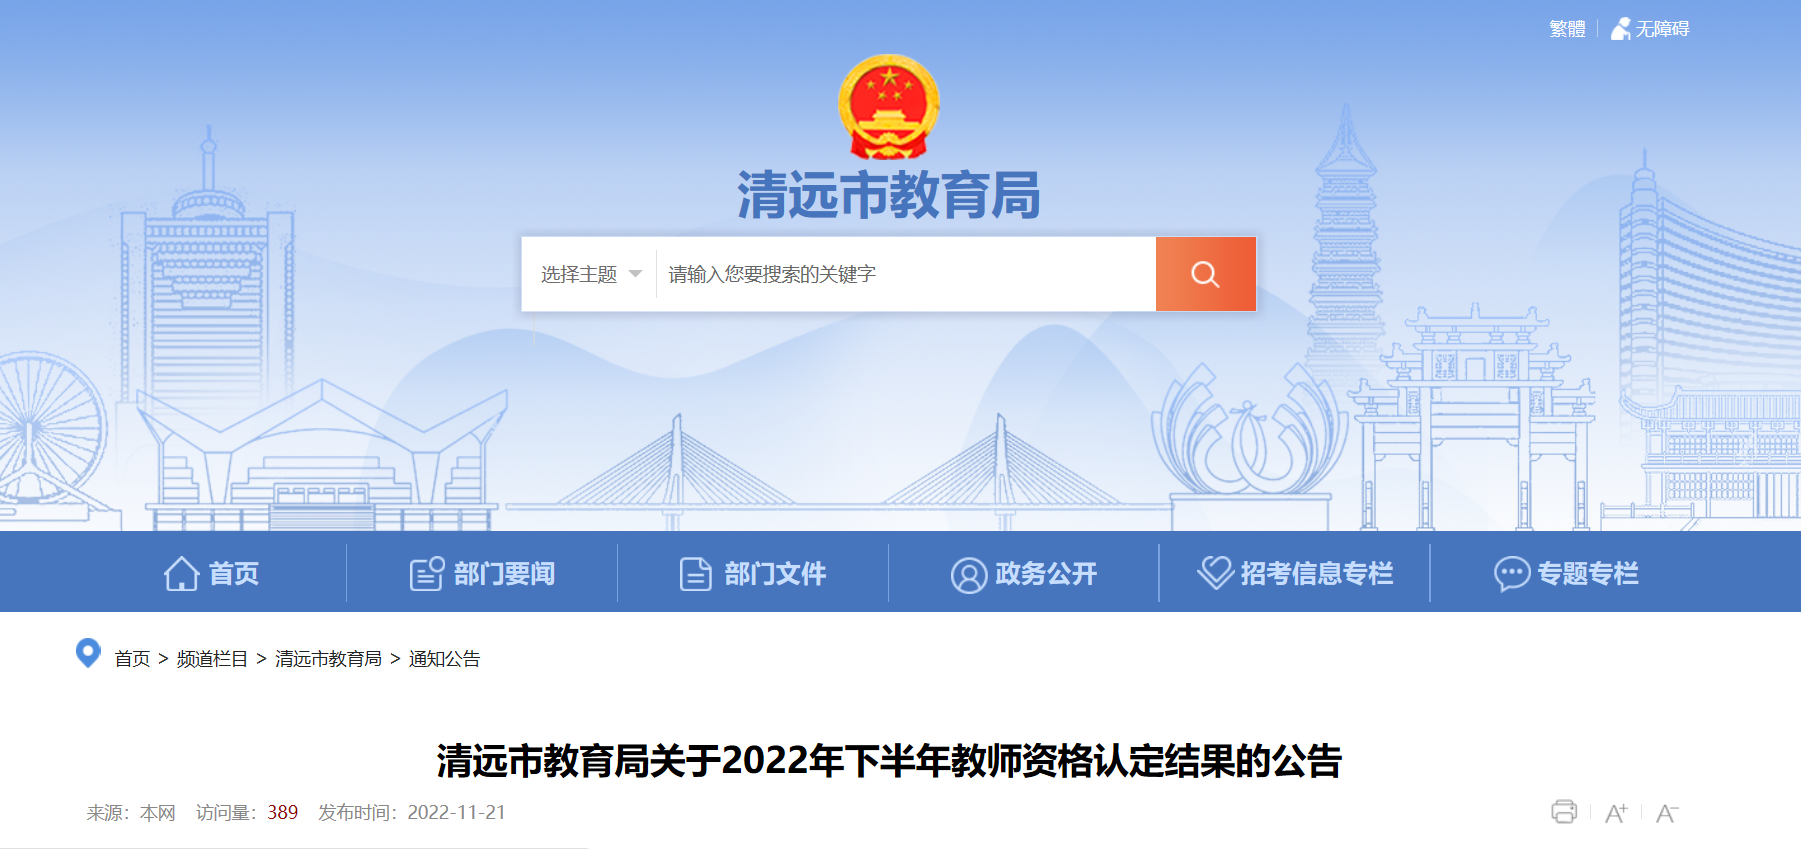 2022年下半年广东清远教师资格认定结果的公告